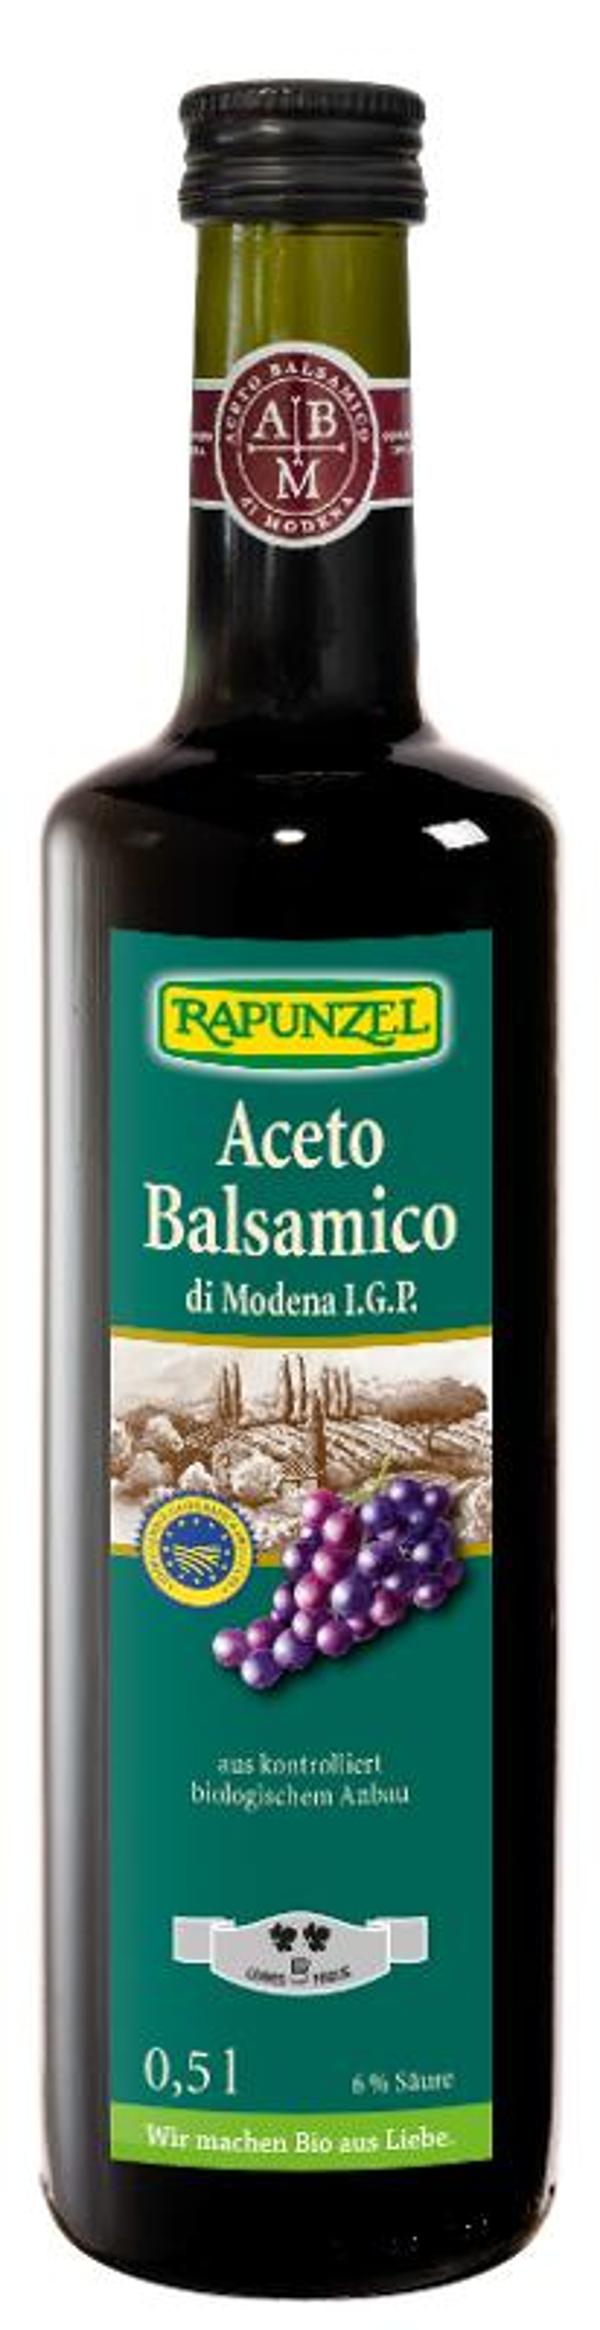 Produktfoto zu Rapunzel Aceto Balsamico di Modena - 0,5l